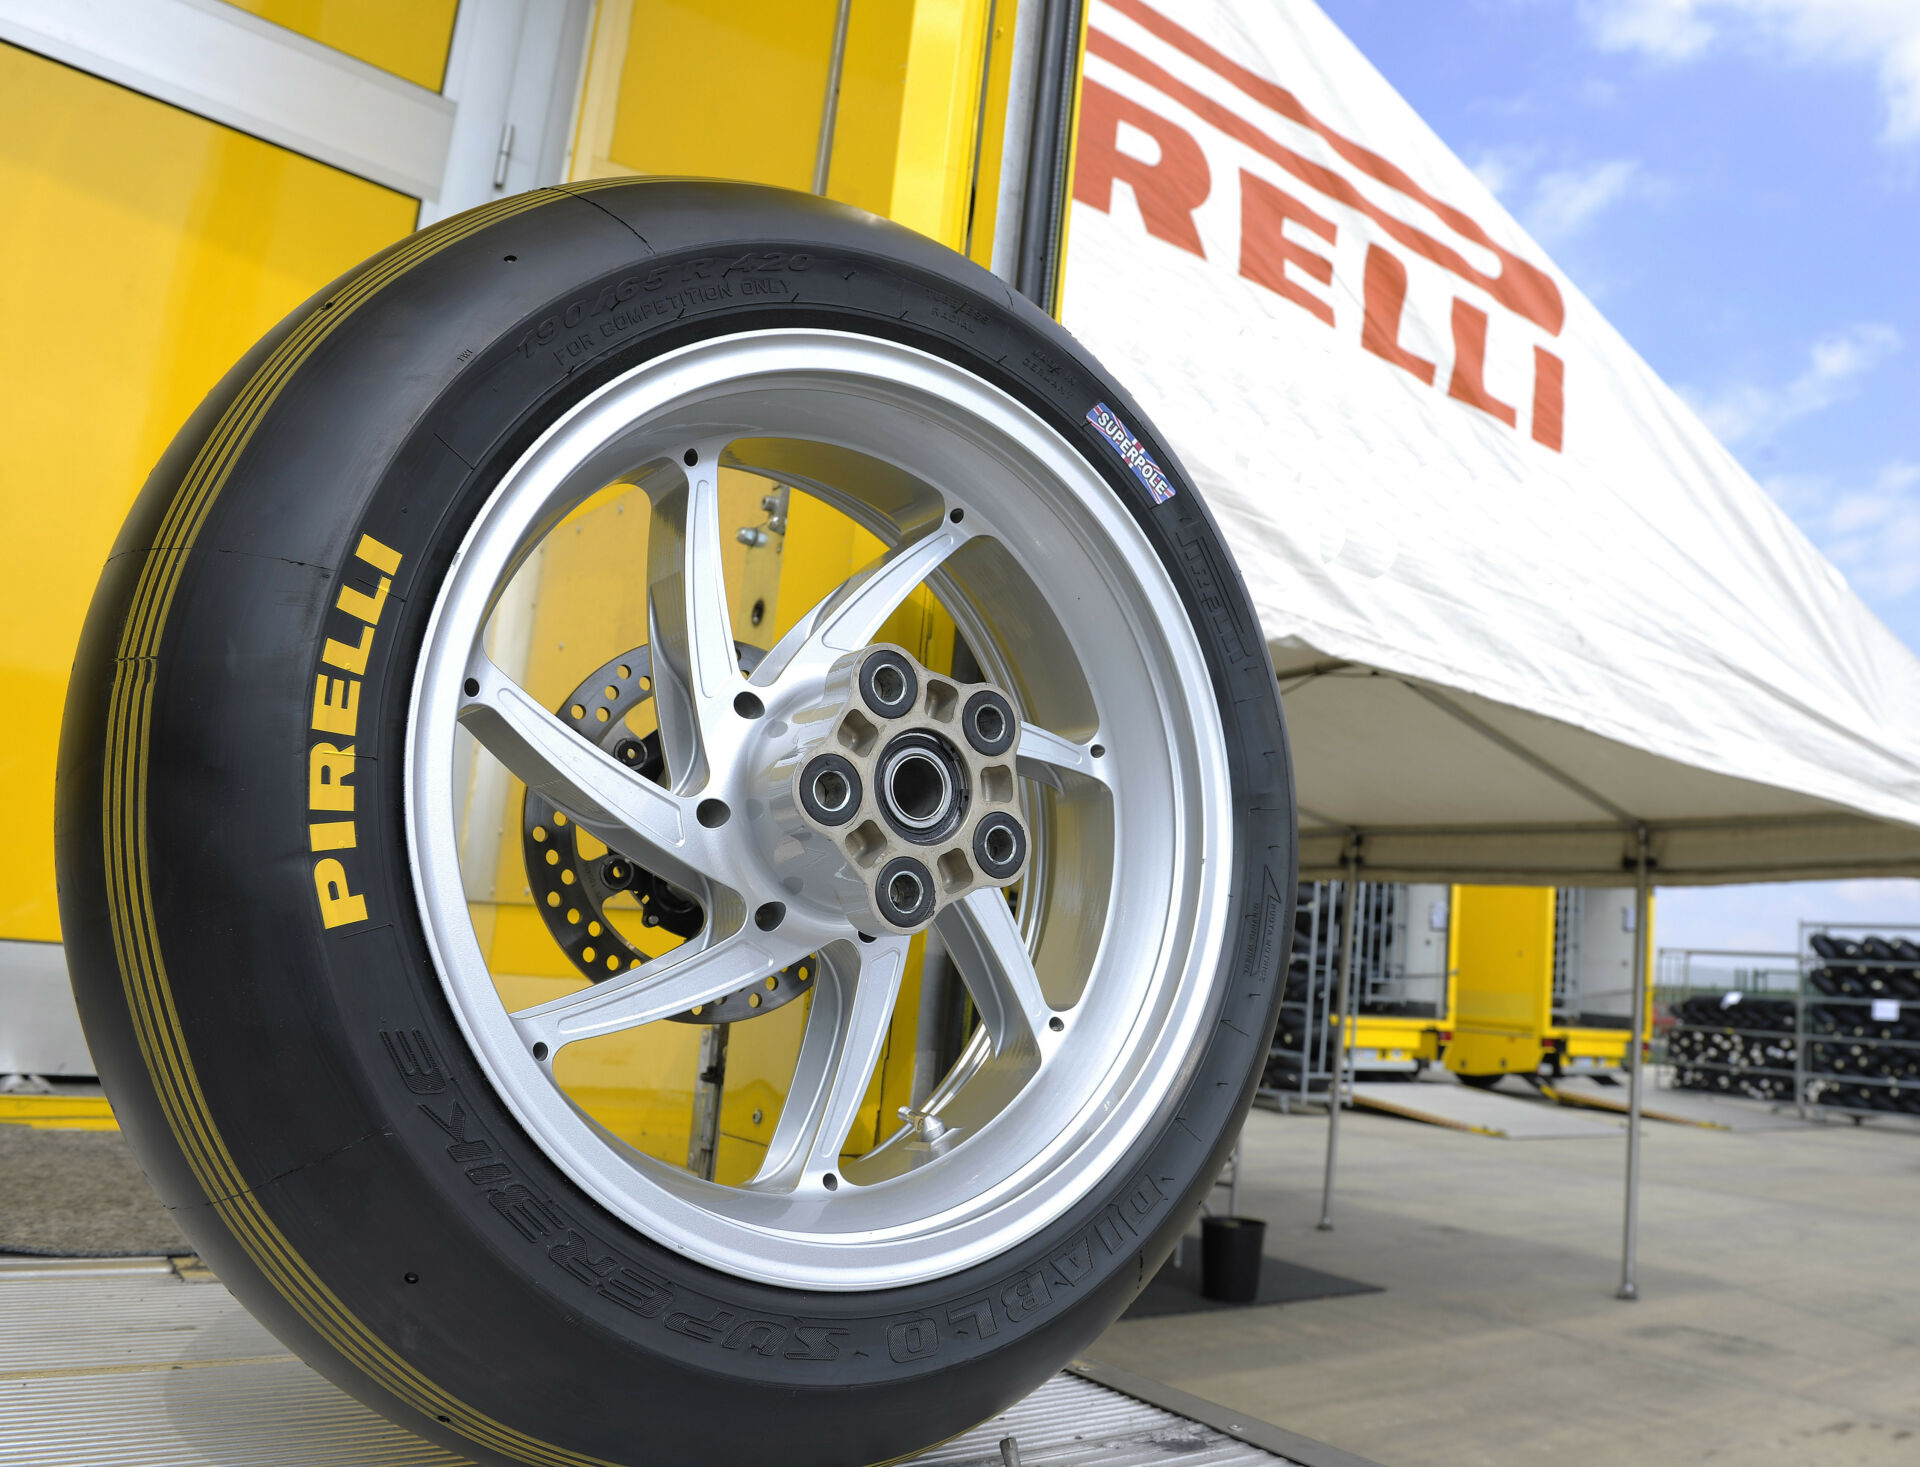 A Pirelli Superpole tire. Photo courtesy Pirelli.